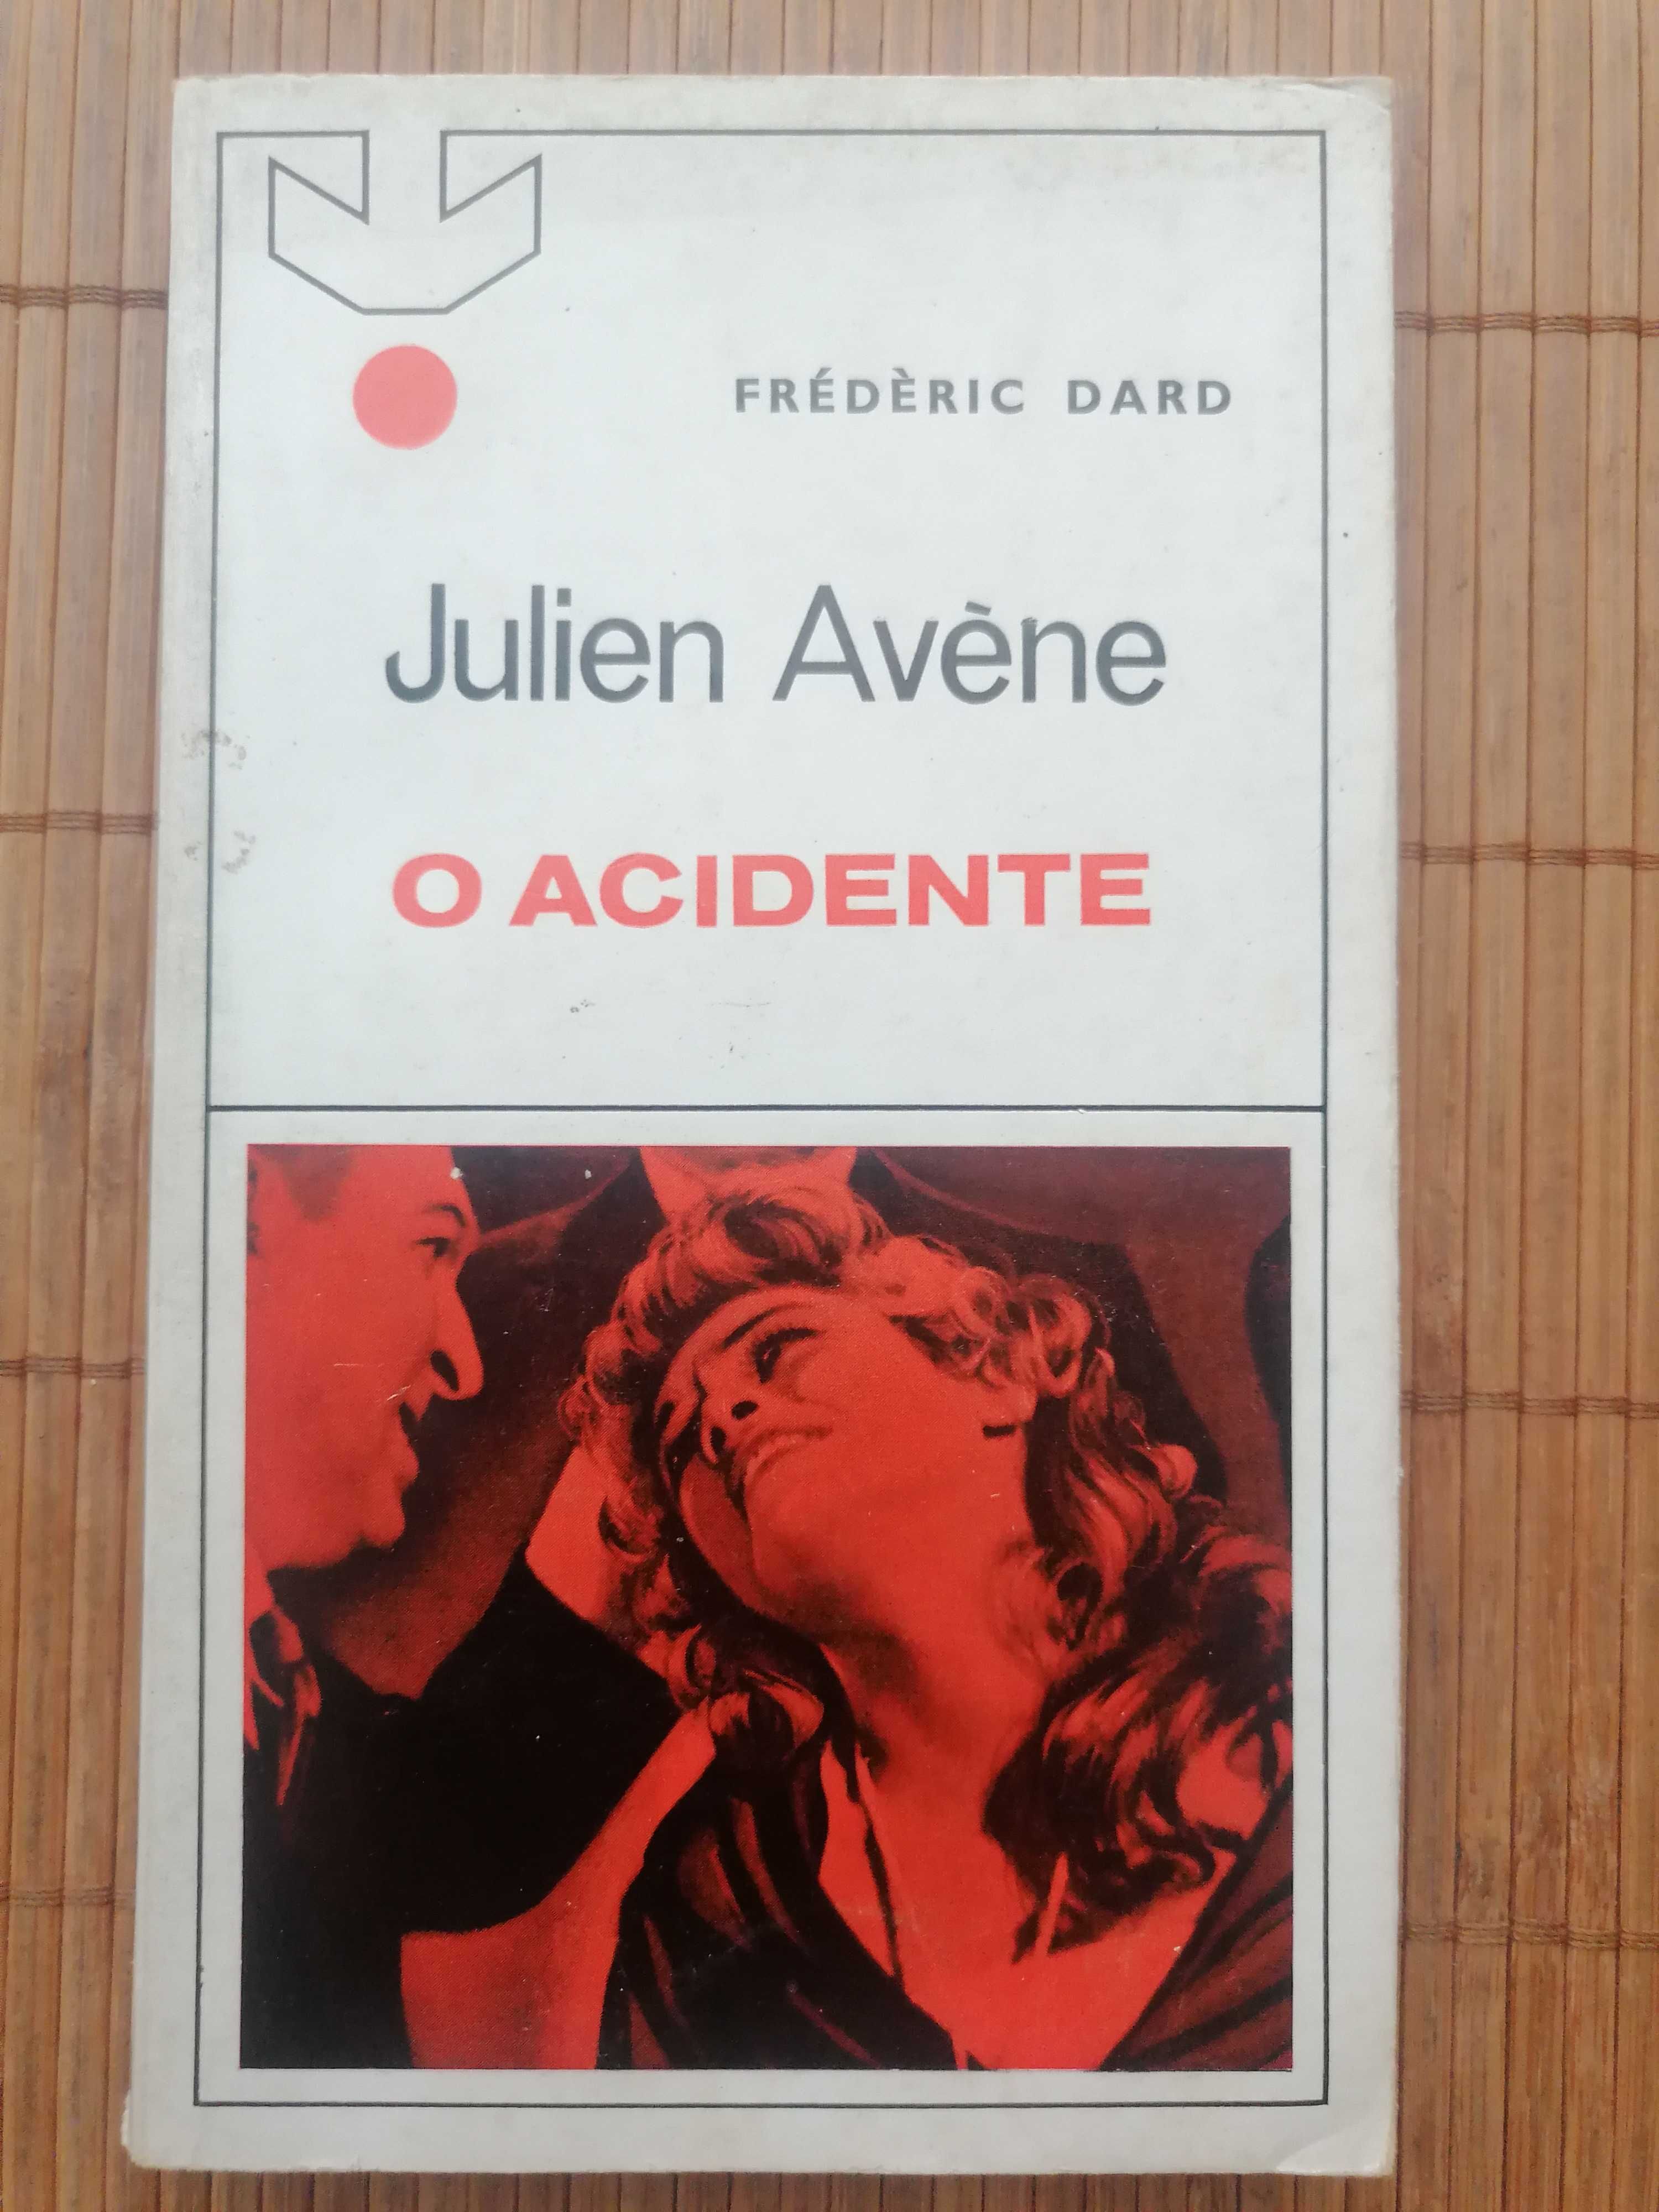 Livro "O Acidente", de Frédèric Dard